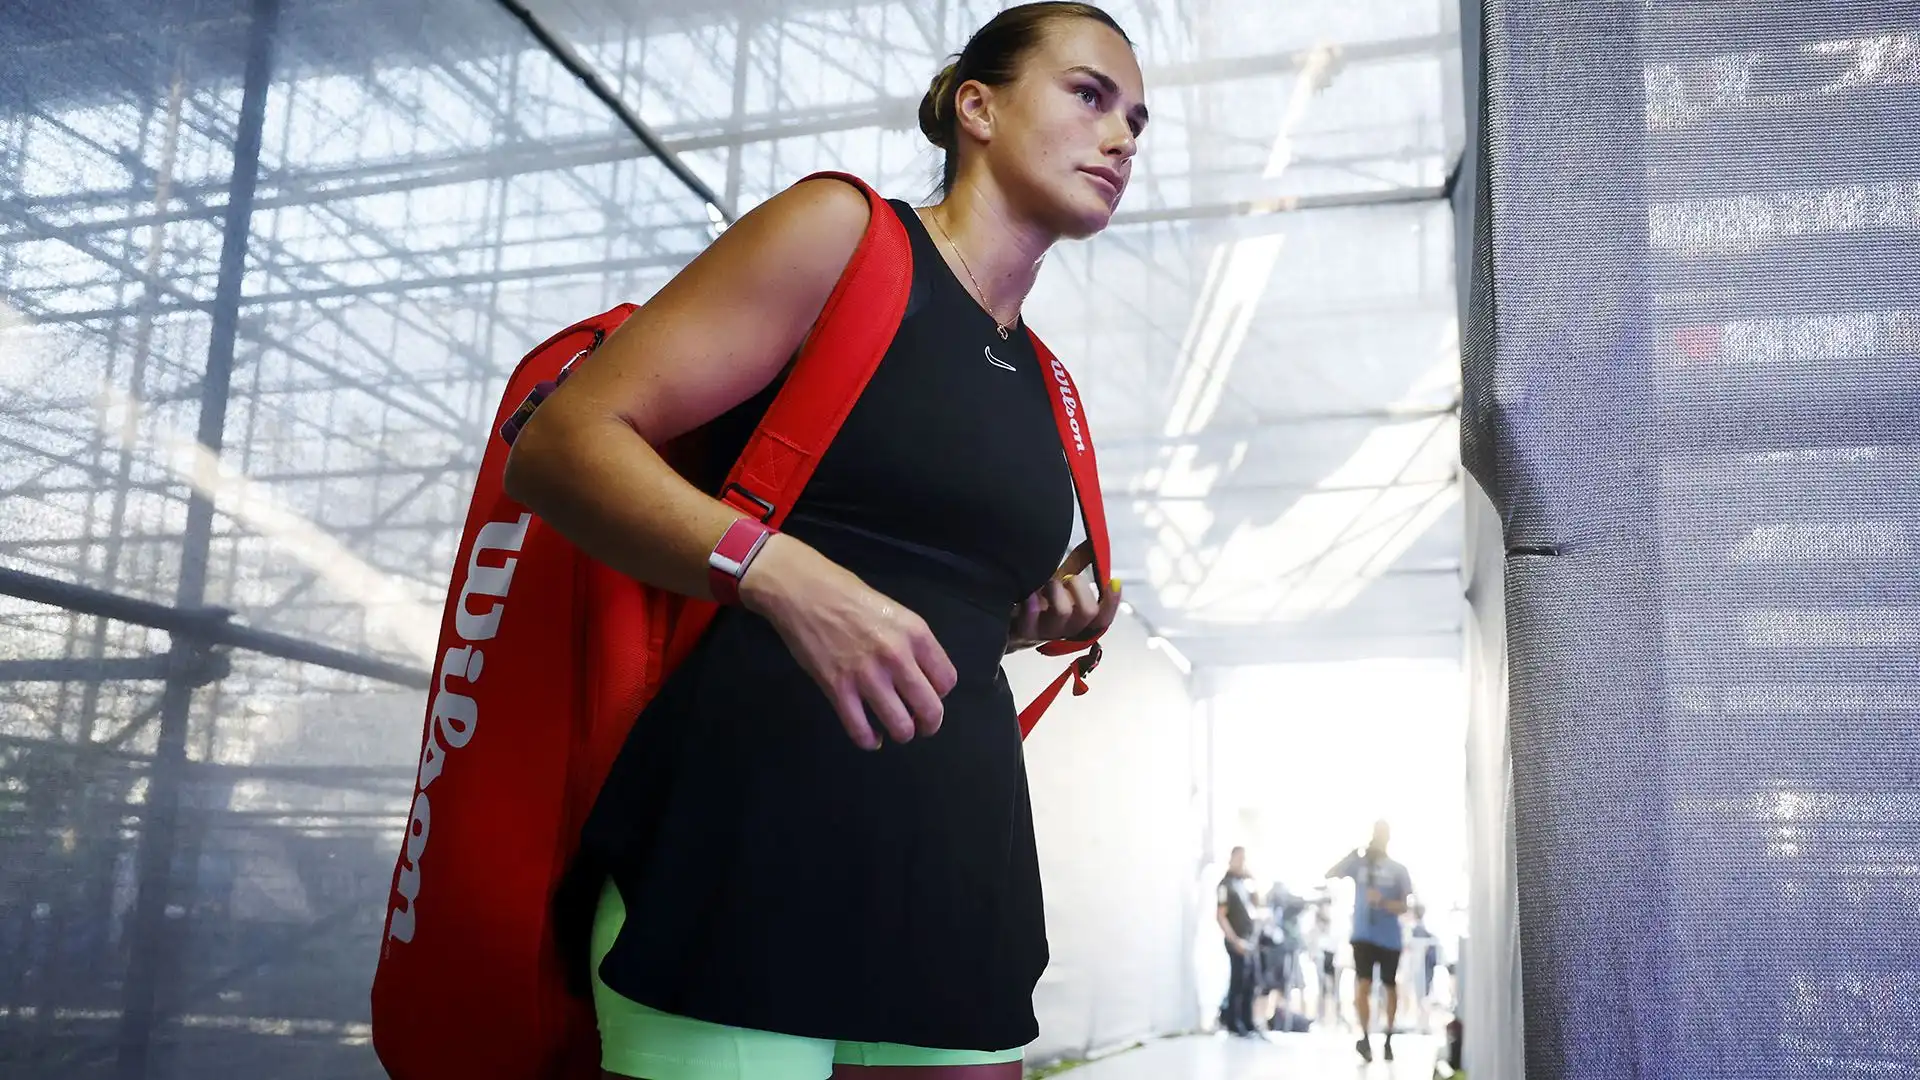 La bielorussa Sabalenka a Cancun (Messico) sfidava la russa naturalizzata kazaka Rybakina per un posto nelle semifinali della WTA Finals